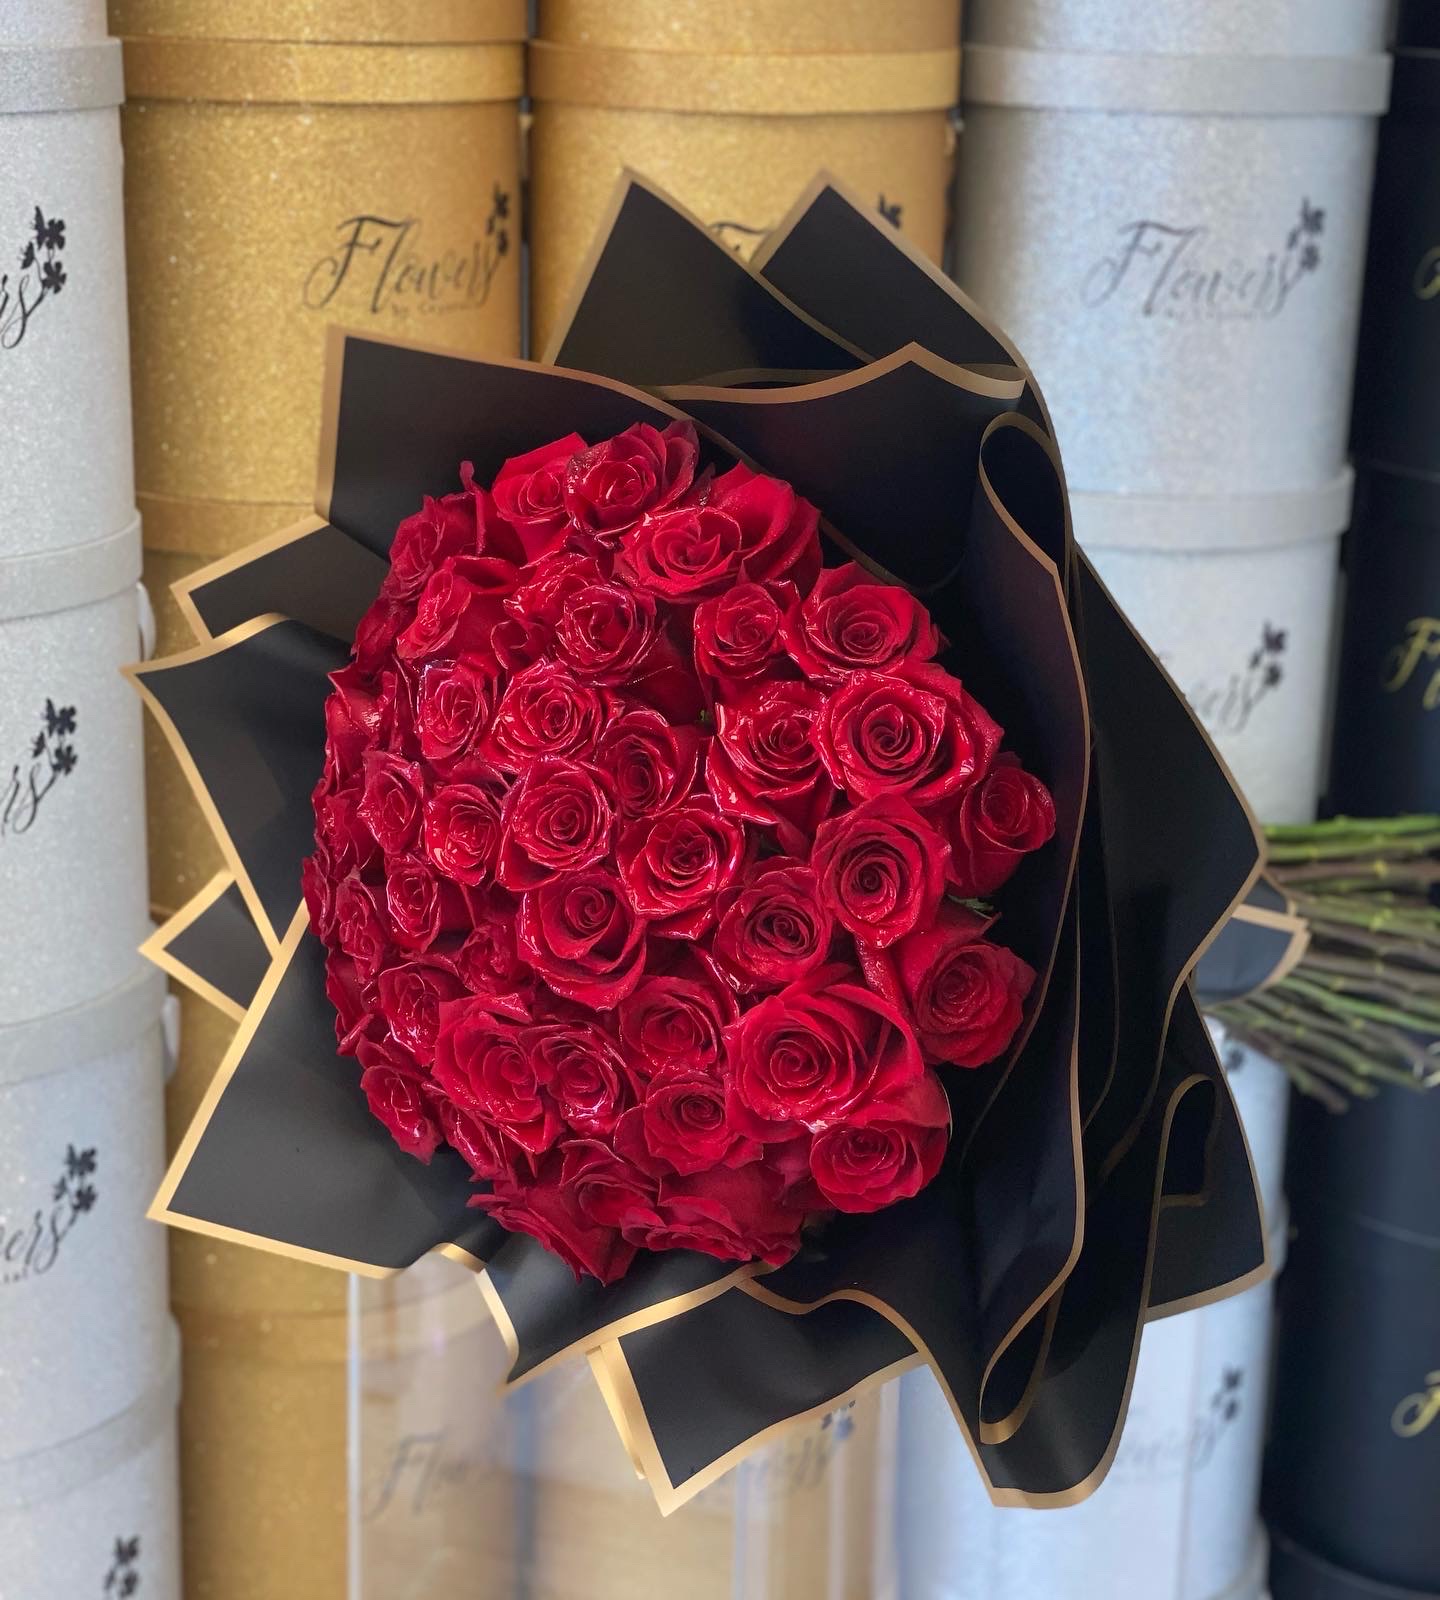 RED ROSES BOUQUET - Bouquet Of Red Roses, bouquet rose 